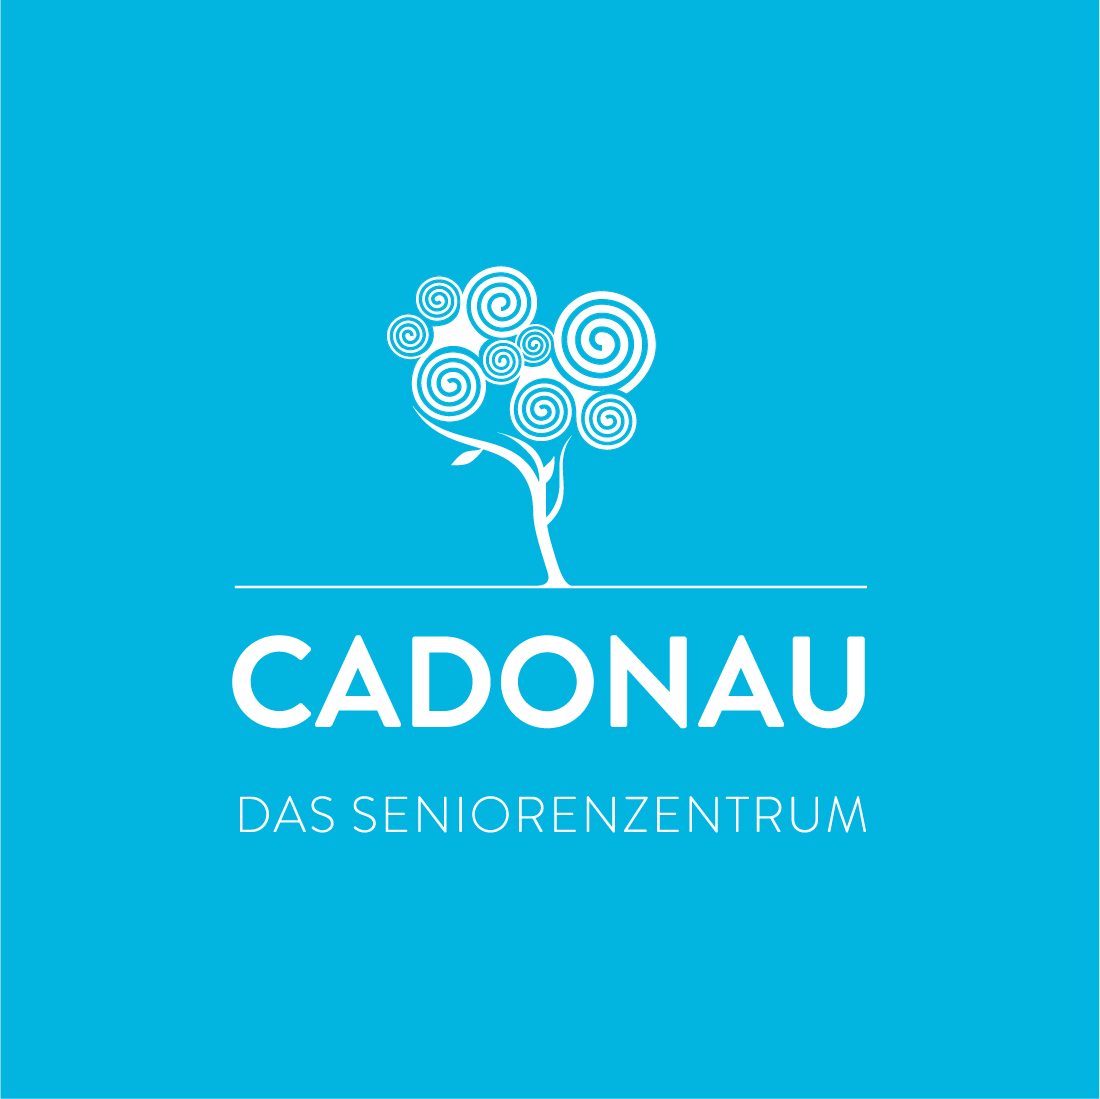 Cadonau – Das Seniorenzentrum